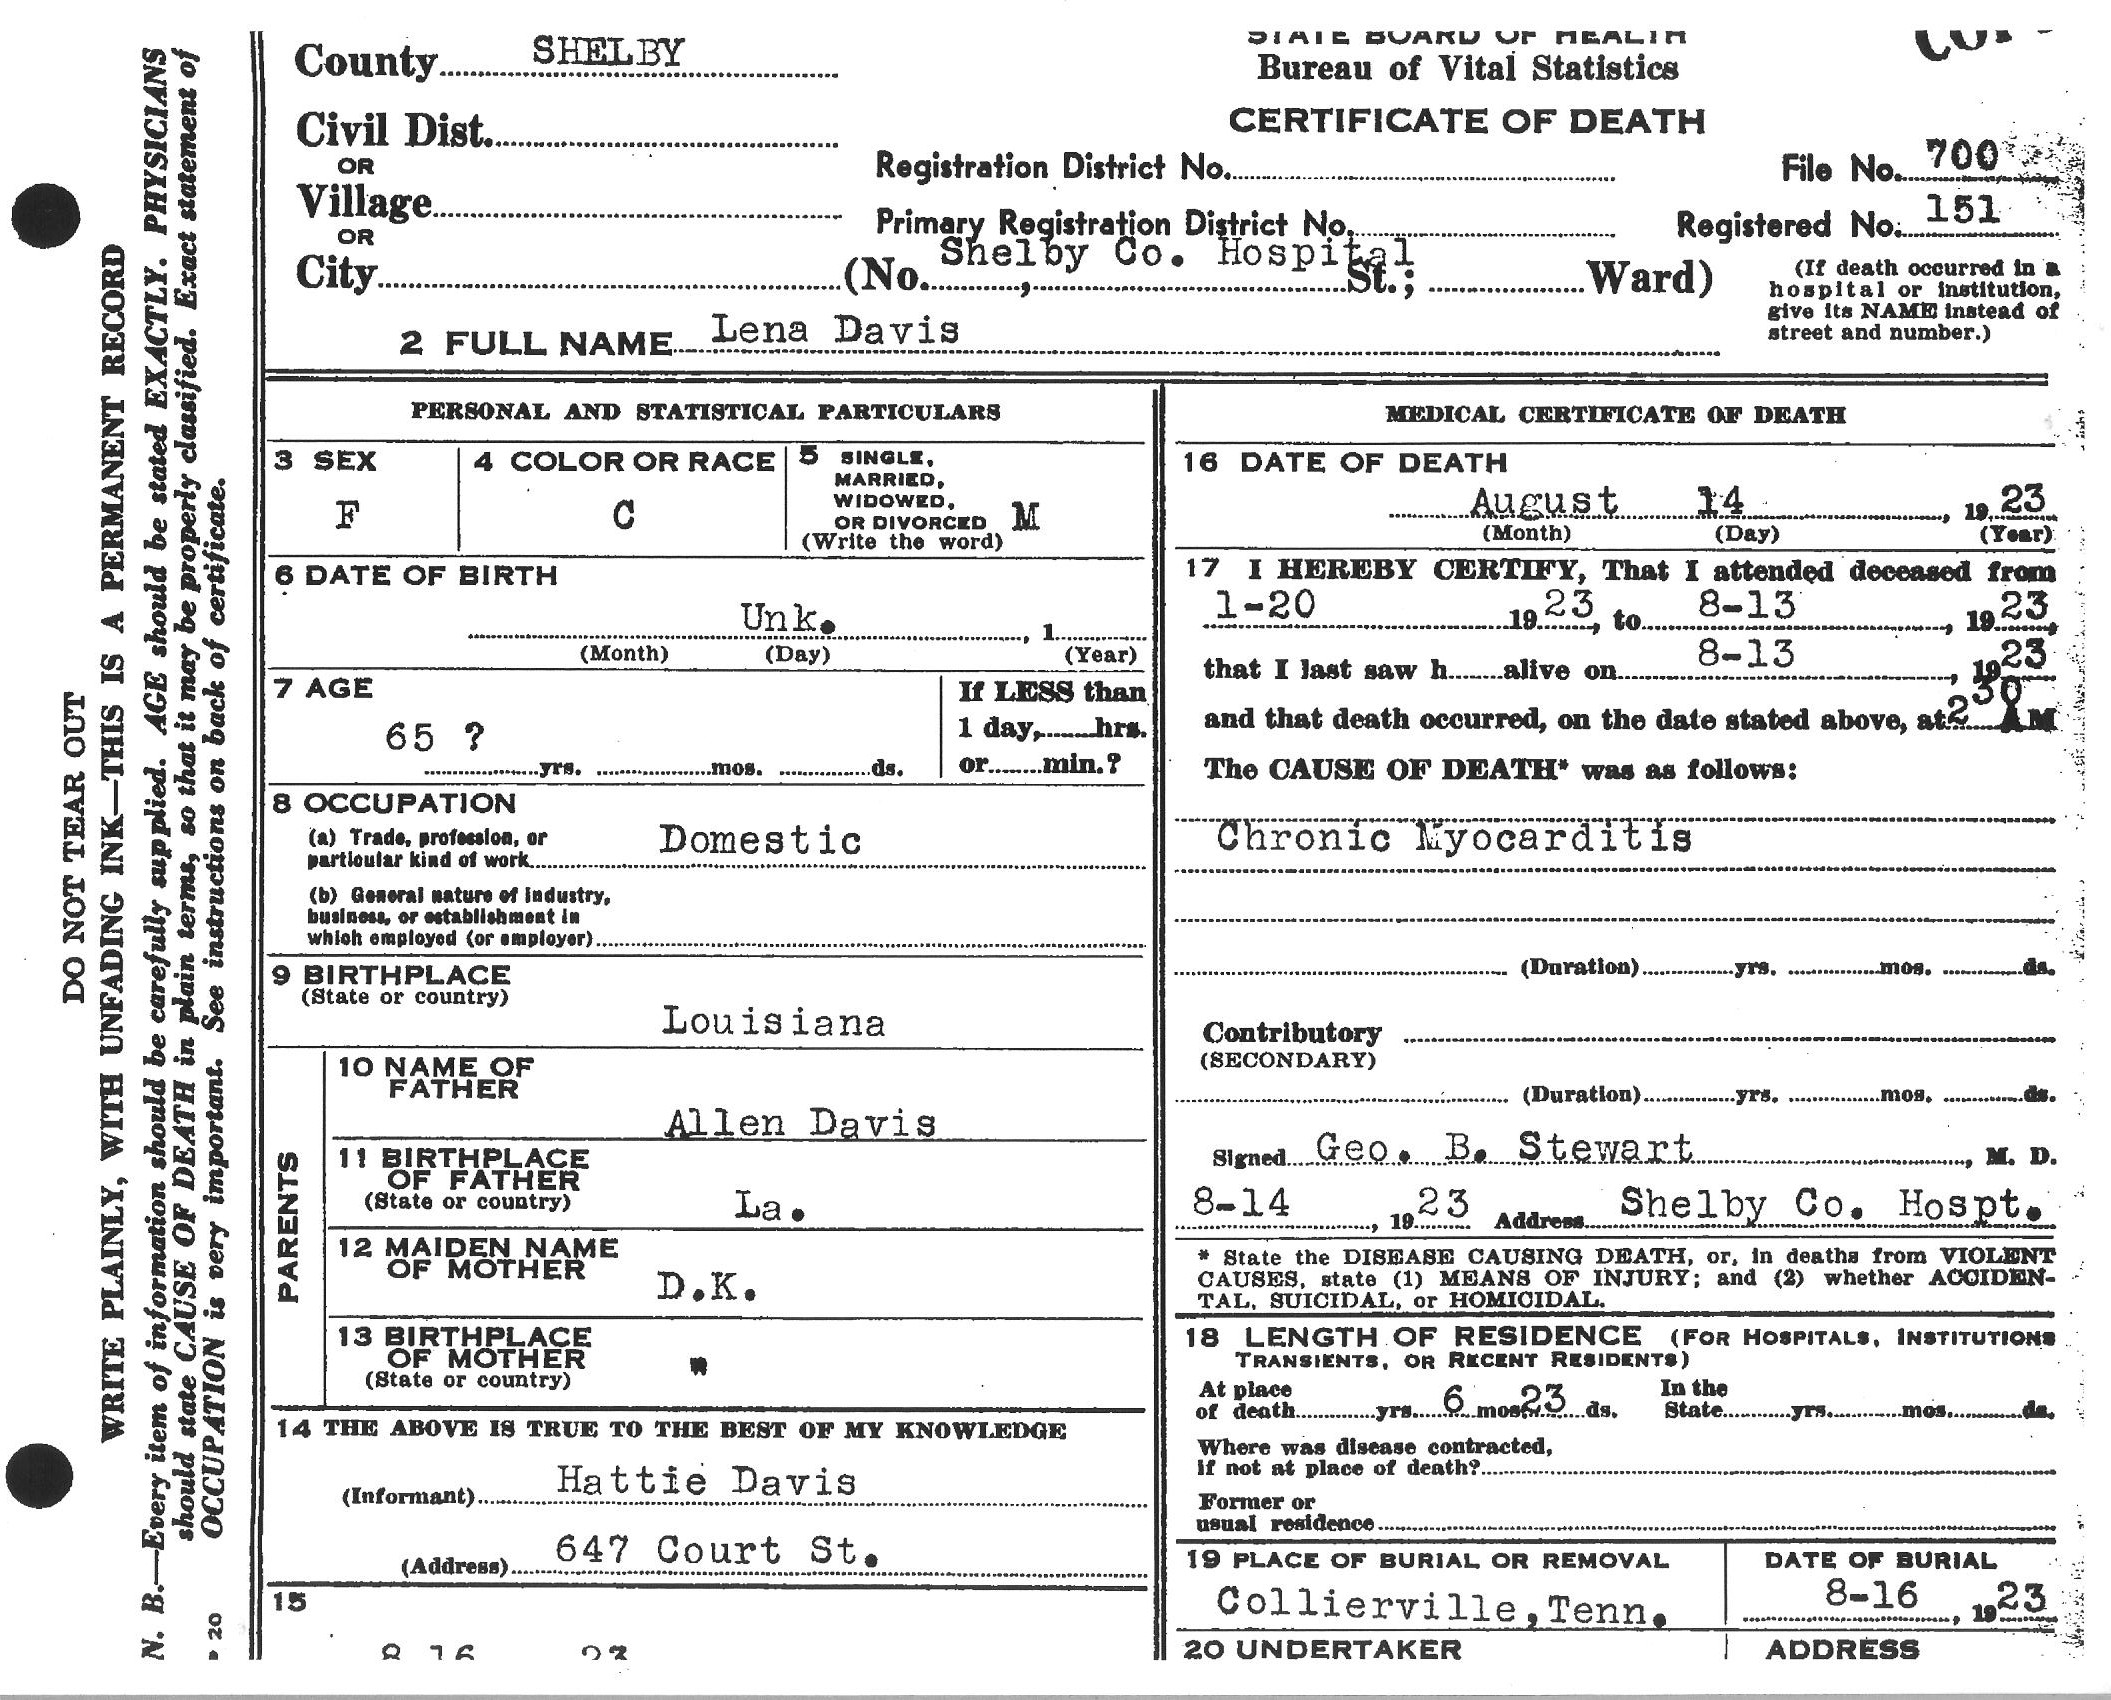 Lena Davis' Death Certificate